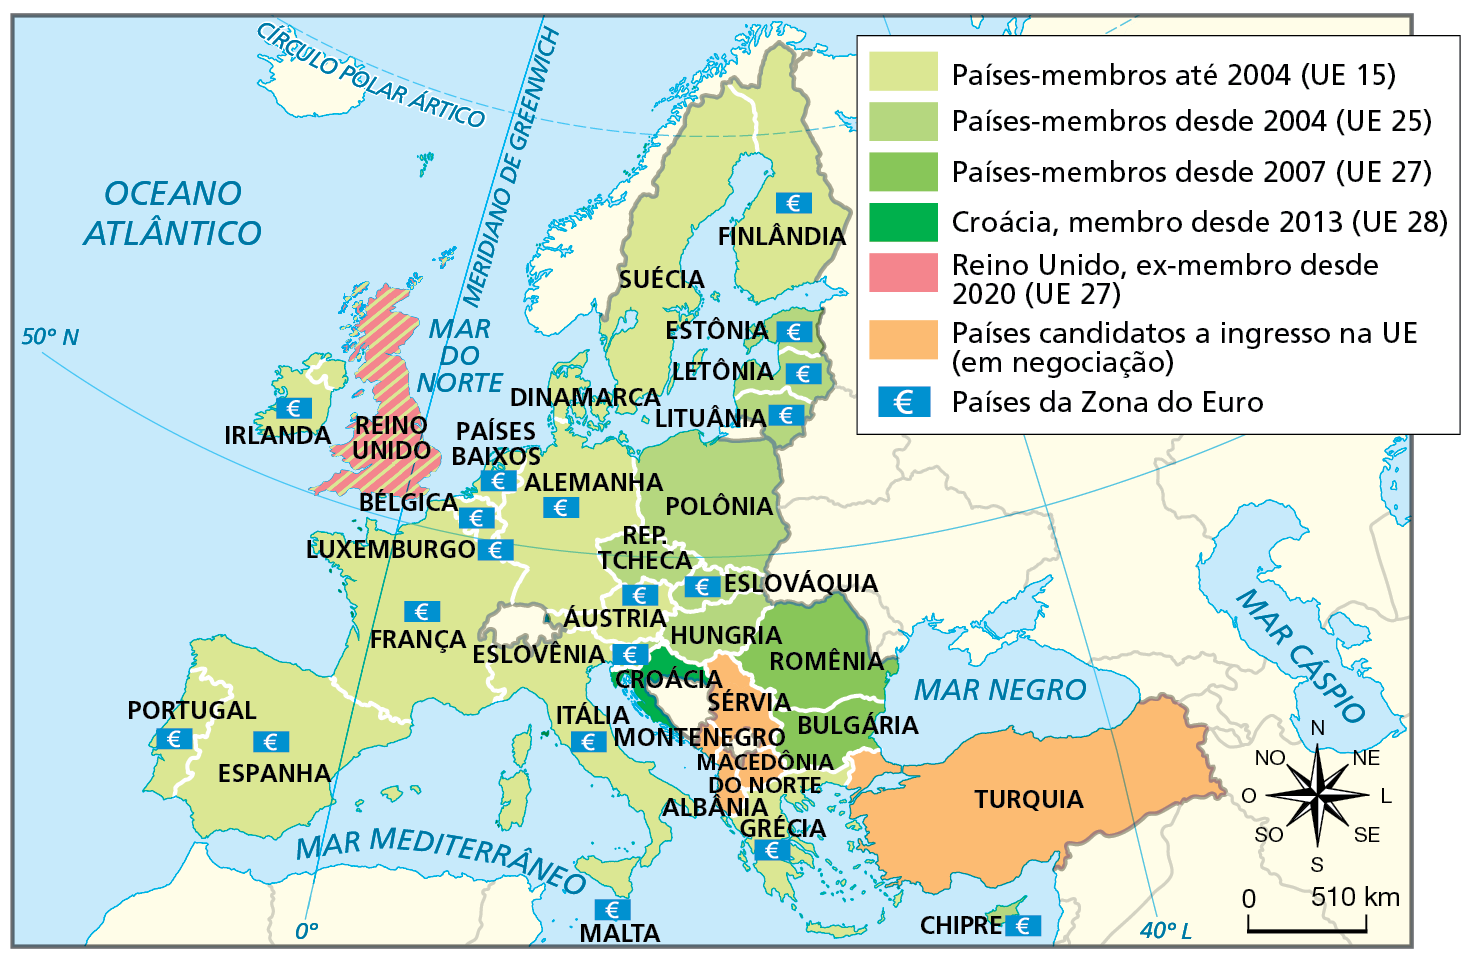 Mapa. União Europeia (UE), 2021. Mapa representando os países-membros da União Europeia.
Países-membros até 2004 (UE 15): Finlândia, Suécia, Dinamarca, Alemanha, Países Baixos, Bélgica, Luxemburgo, França, Portugal, Espanha, Irlanda, Reino Unido, Áustria, Eslovênia, Malta, Itália e Grécia. 
Países-membros desde 2004 (UE 25): Estônia, Letônia, Lituânia, Polônia, Hungria, República Tcheca, Eslováquia e Chipre. 
Países-membros desde 2007 (UE 27): Romênia e Bulgária.
Croácia, membro desde 2013 (UE 28): Croácia.
Reino Unido, ex-membro desde 2020 (UE 27): Reino Unido.
Países candidatos a ingresso na UE (em negociação): Turquia, Sérvia, Montenegro, Macedônia do Norte. 
Países da Zona do Euro: Finlândia, Estônia, Letônia, Lituânia, Luxemburgo, Eslováquia, Áustria, Eslovênia, França, Bélgica, Irlanda, Alemanha, Países Baixos, Portugal, Espanha, Malta, Chipre, Itália e Grécia. 
Na porção inferior, rosa dos ventos e escala de 0 a 510 quilômetros.